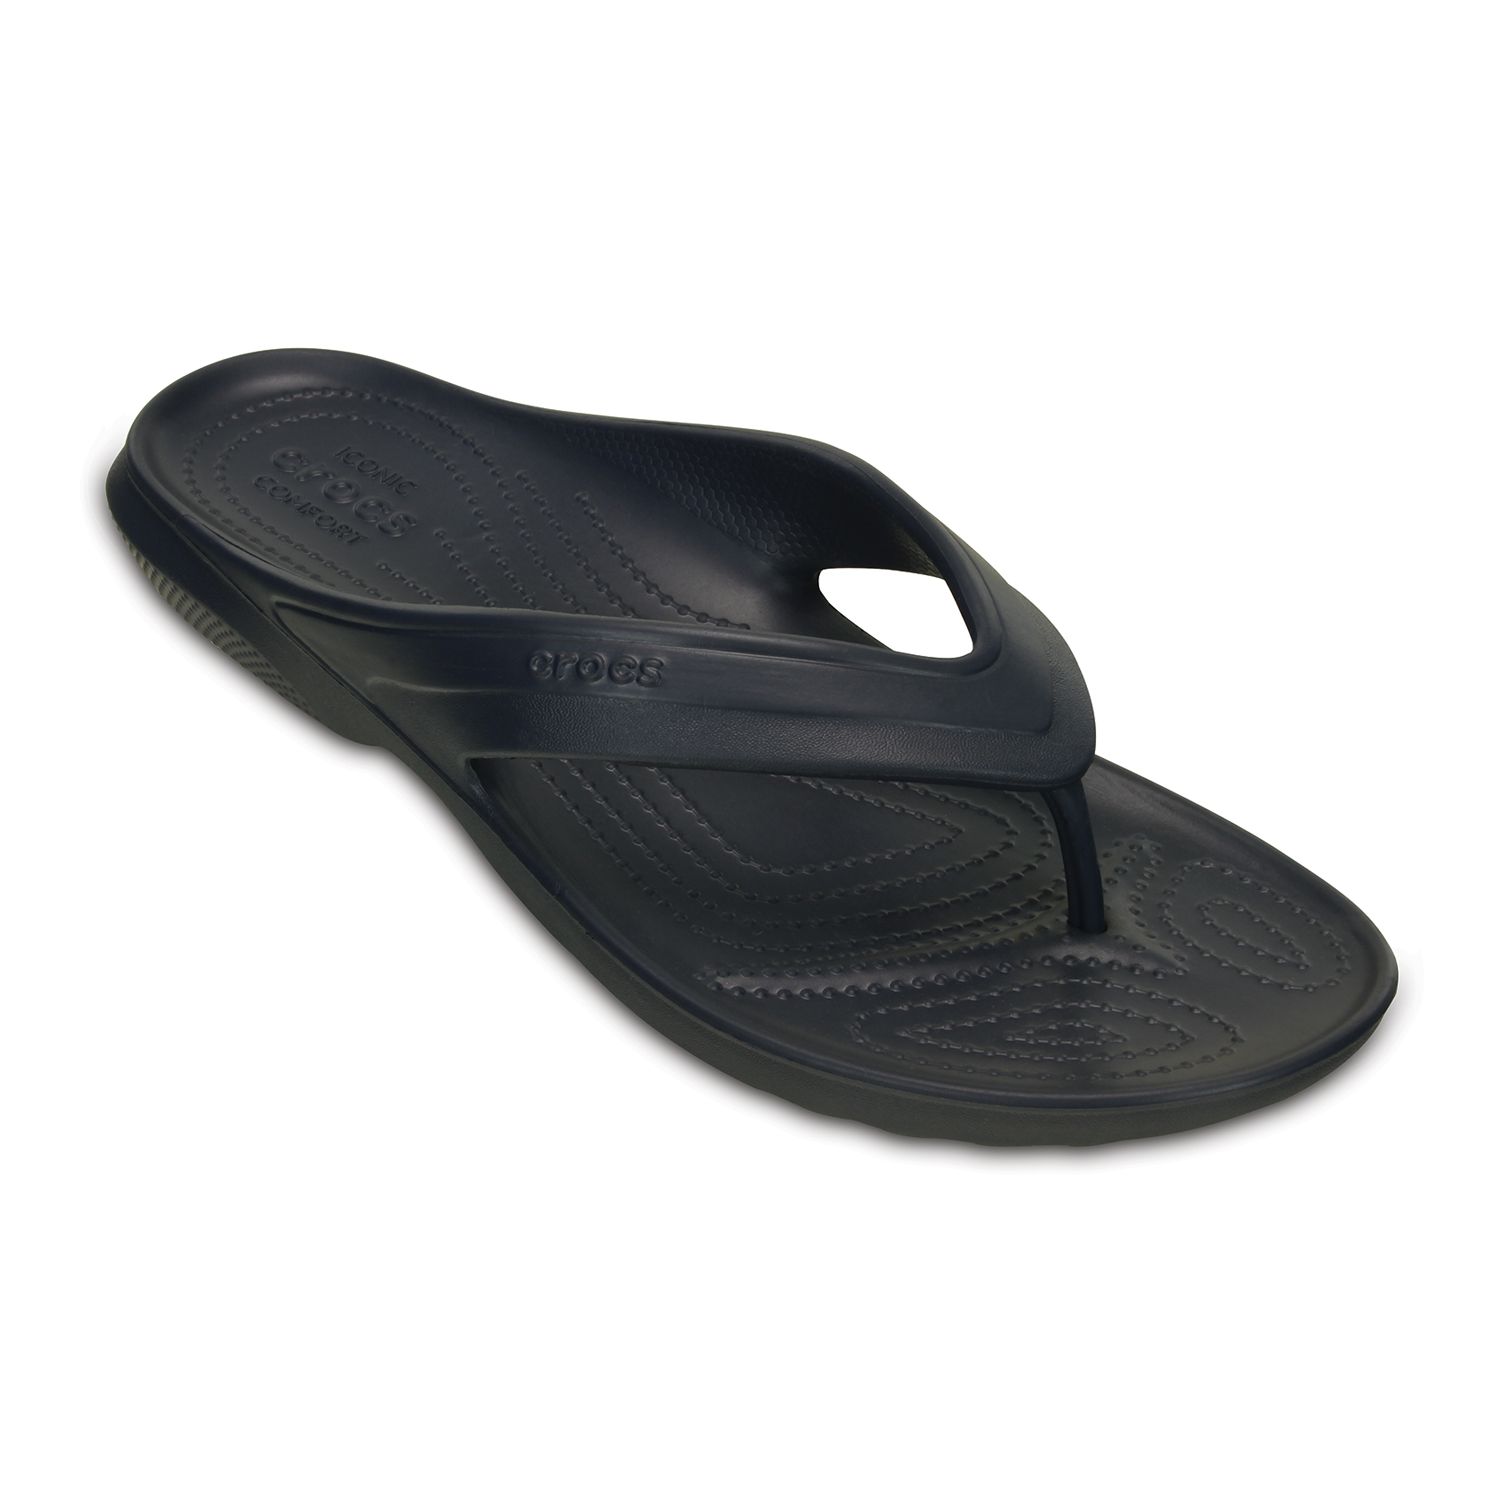 Crocs Classic Men's Flip Flop Sandals